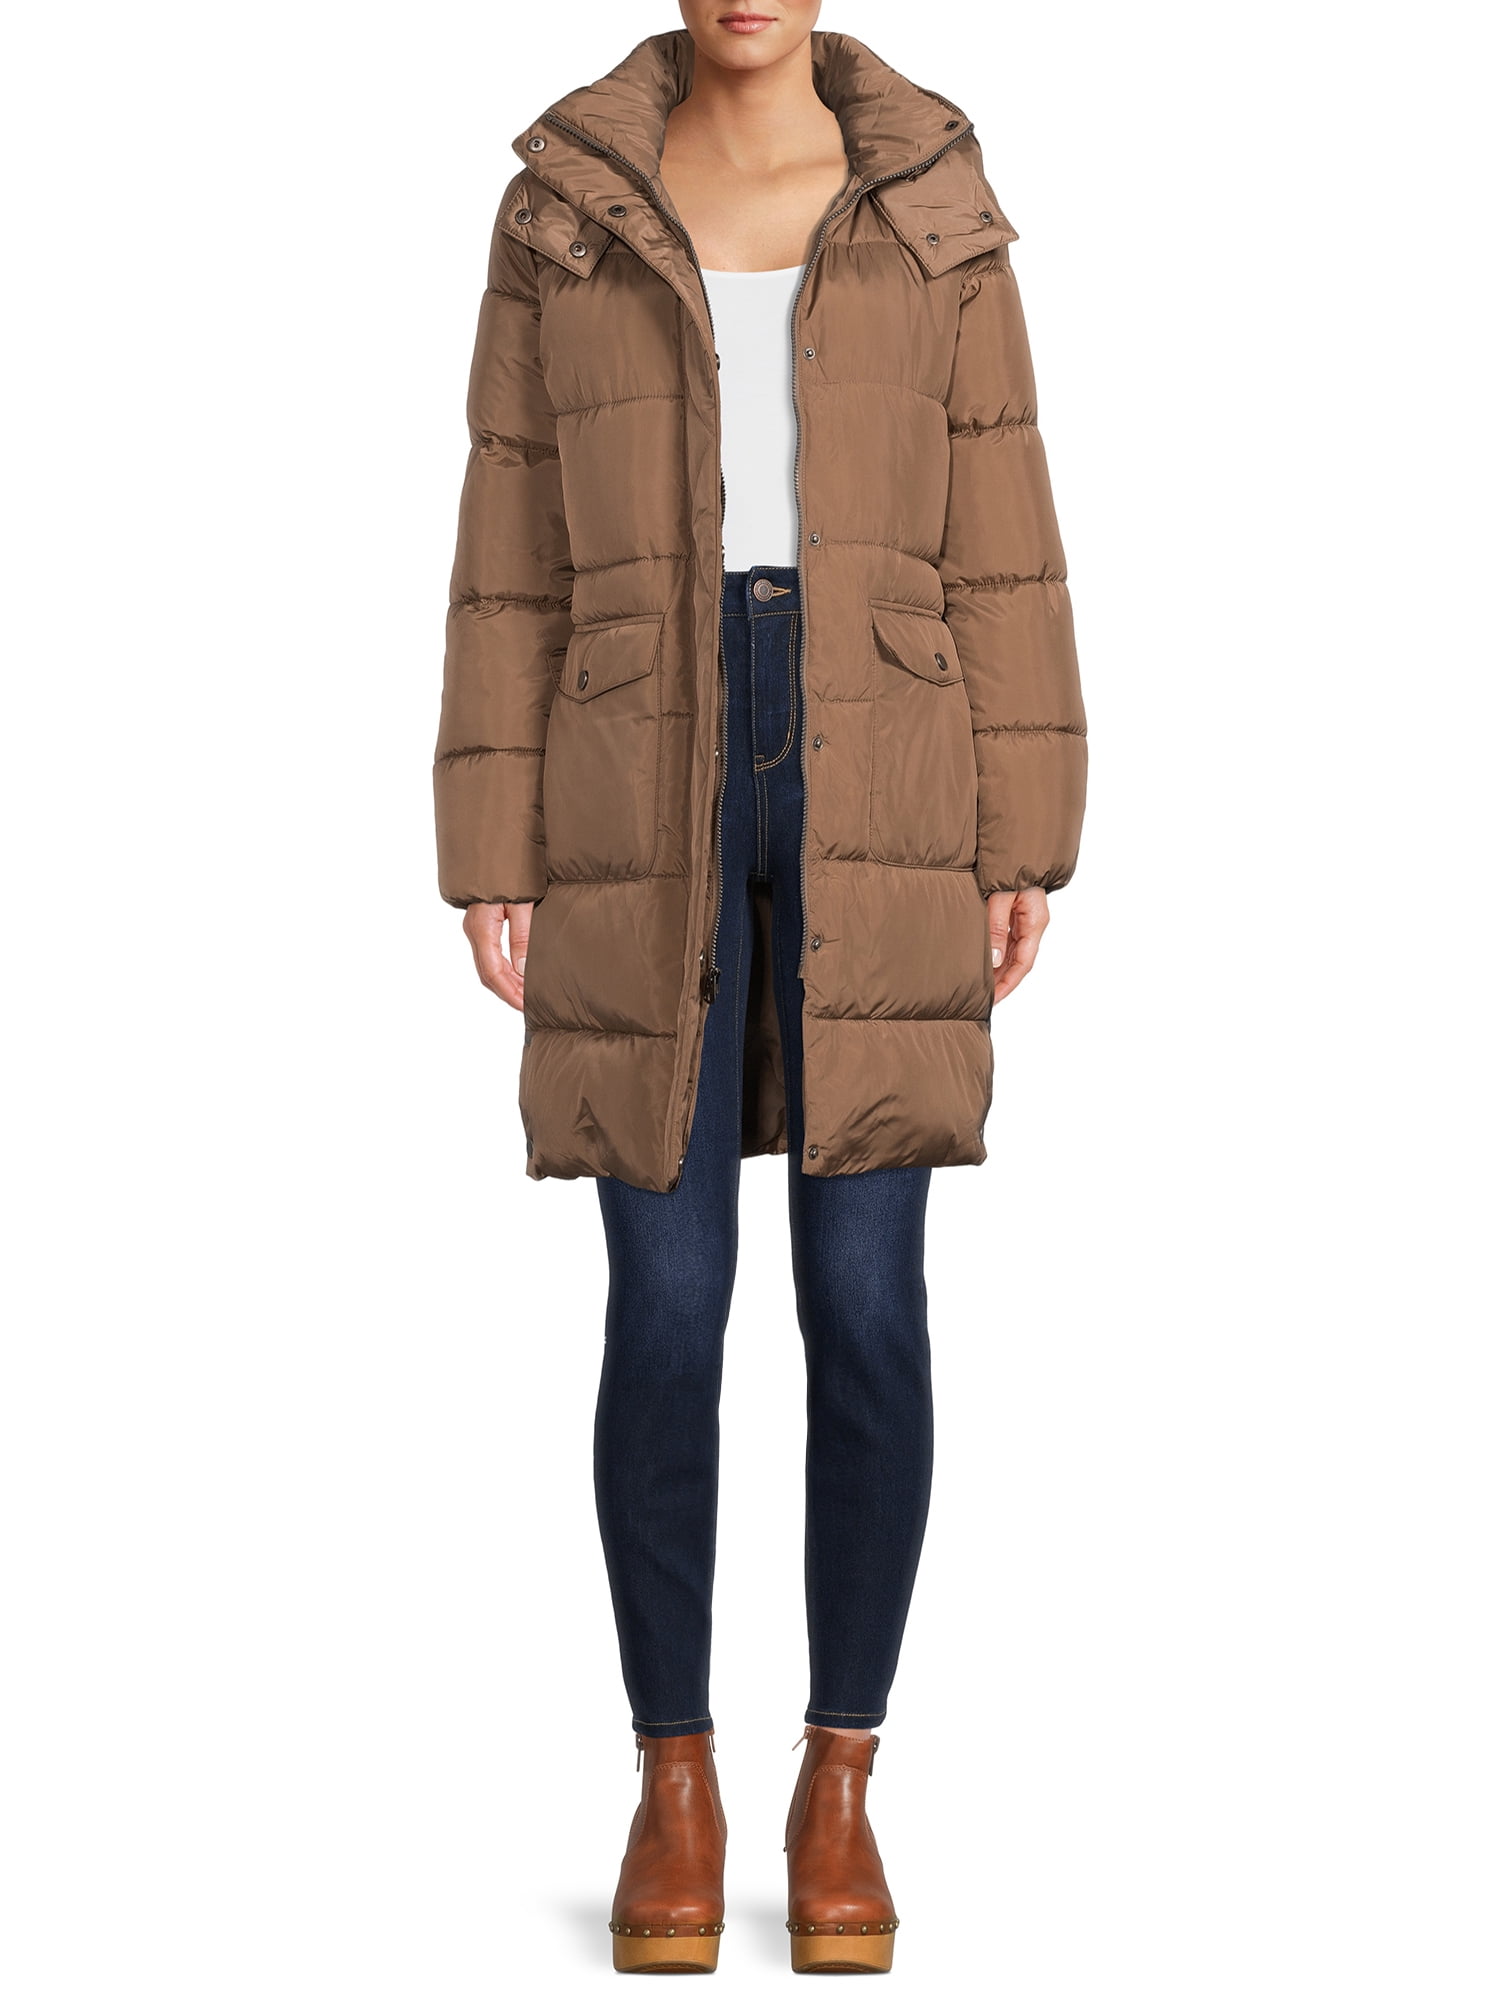 BCBG Paris Women's Long Puffer Coat with Hood, Sizes S-XL - Walmart.com